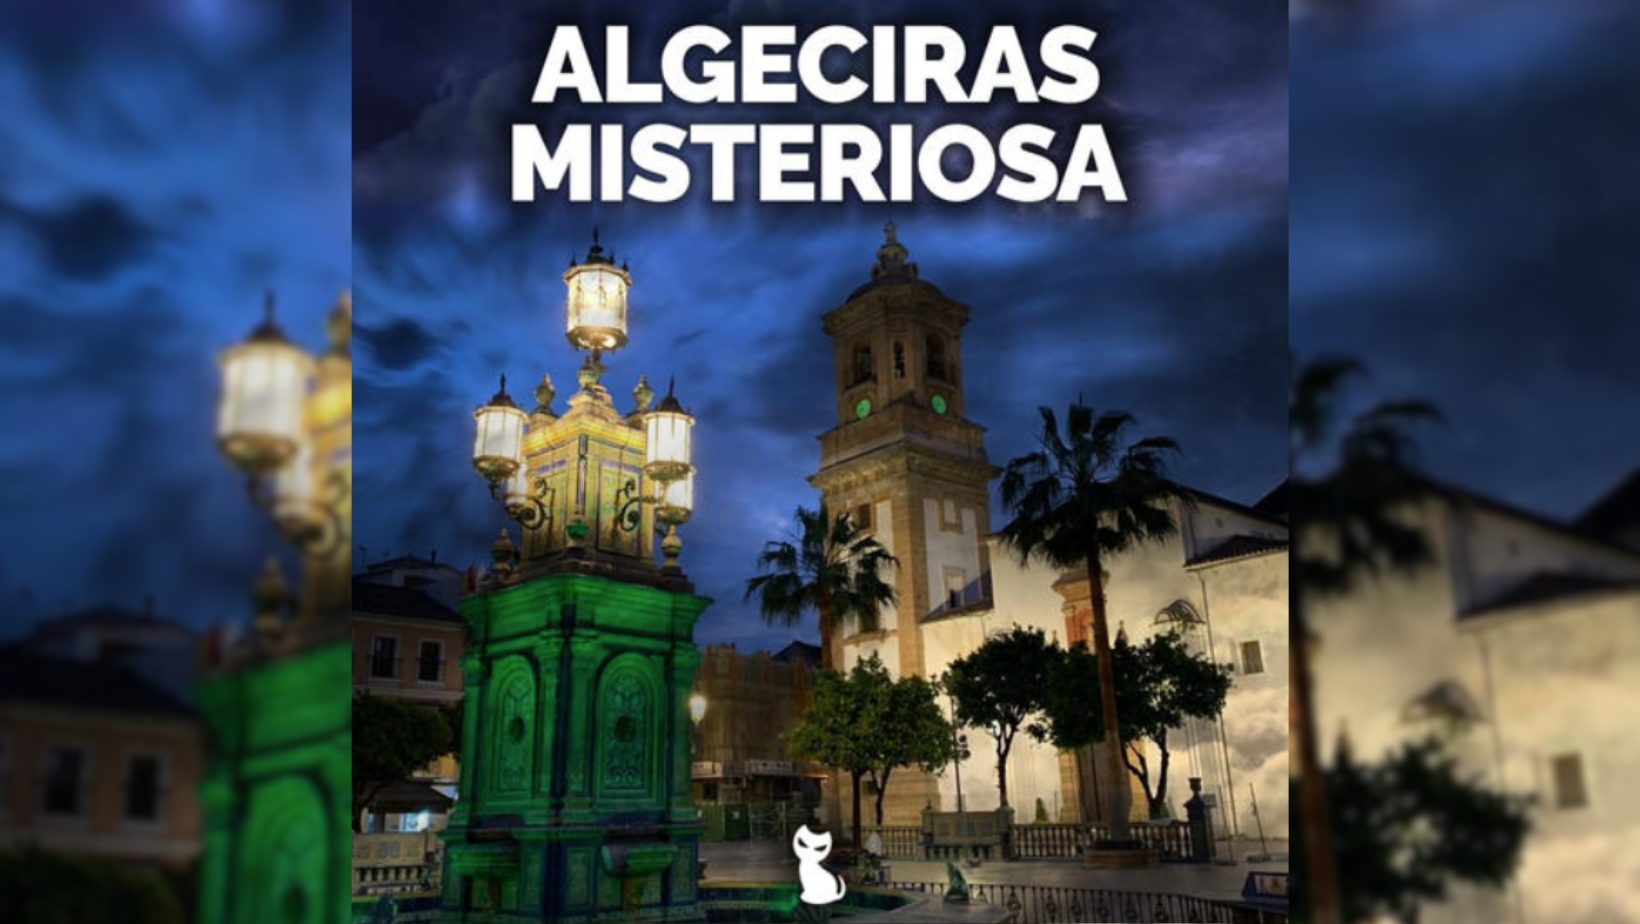 Algeciras Misteriosa: Una ruta nocturna sobre casas encantadas, leyendas y psicofonías